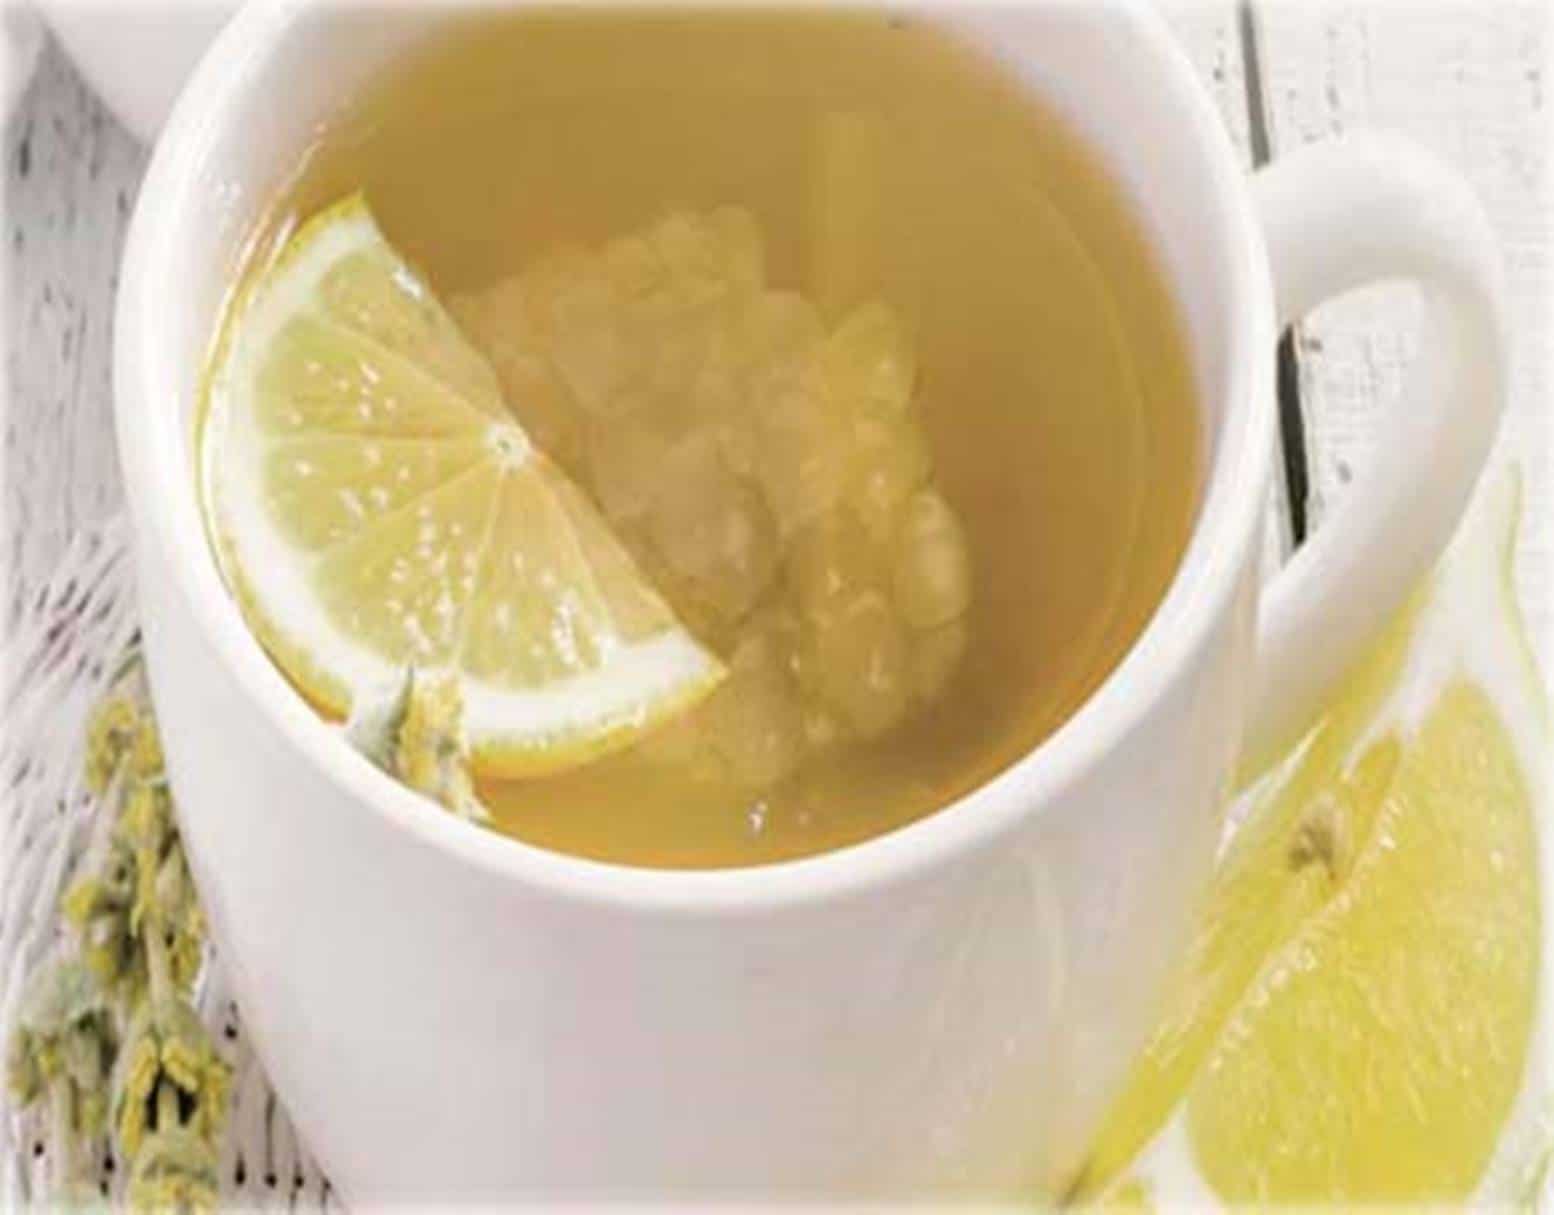 Chá de tapioca emagrece: veja como preparar e dicas de consumo